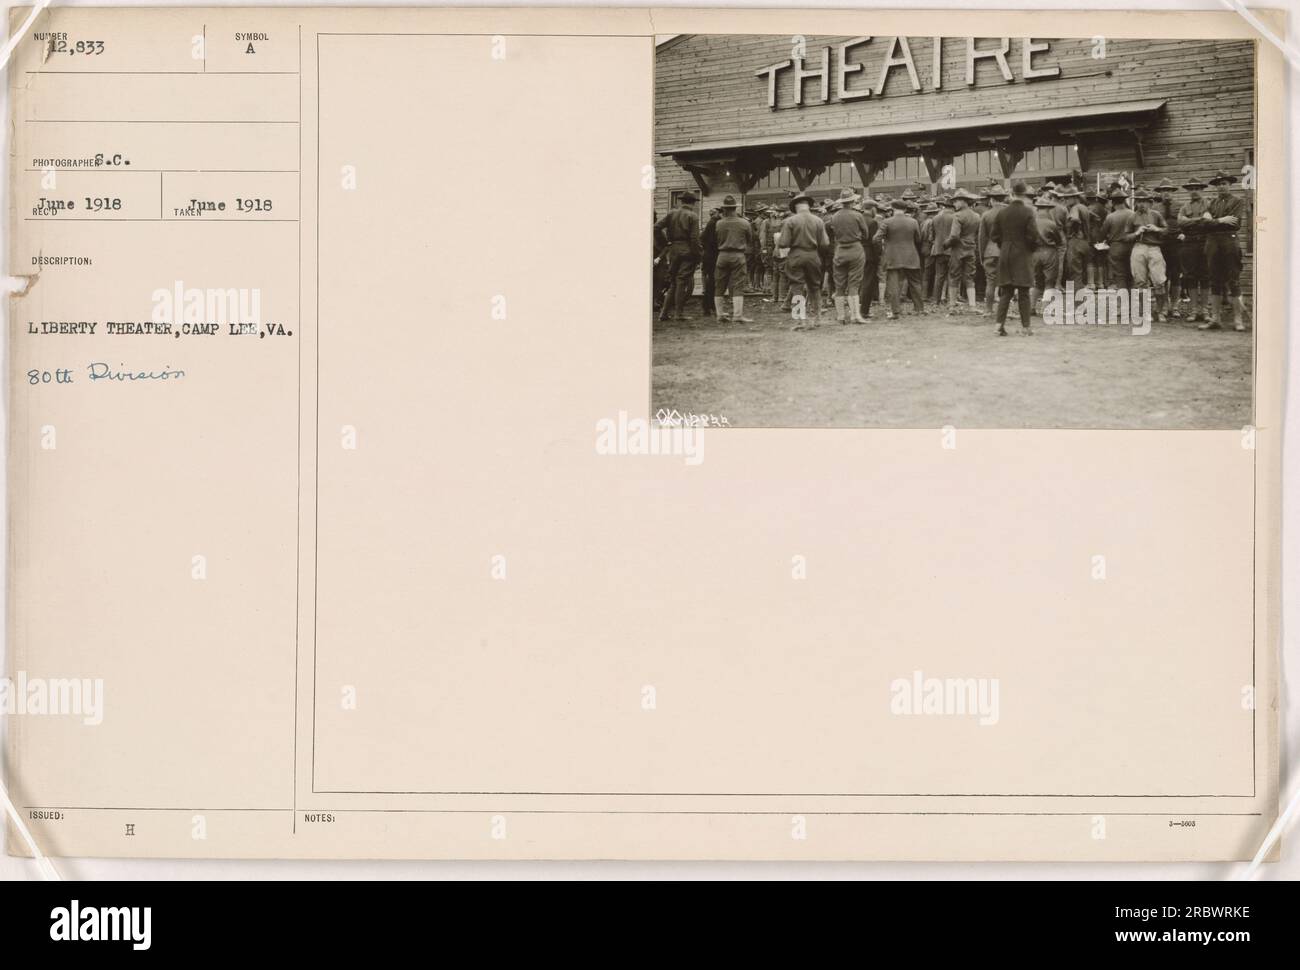 Un'immagine di un Liberty Theater a Camp Lee, Virginia, nel 1918. La foto è stata scattata dal fotografo C. ne ed è etichettata come 111-SC-12833. Il teatro è associato alla 80th Division. La foto è stata pubblicata come parte di una serie sulle attività militari americane durante la prima guerra mondiale. Foto Stock